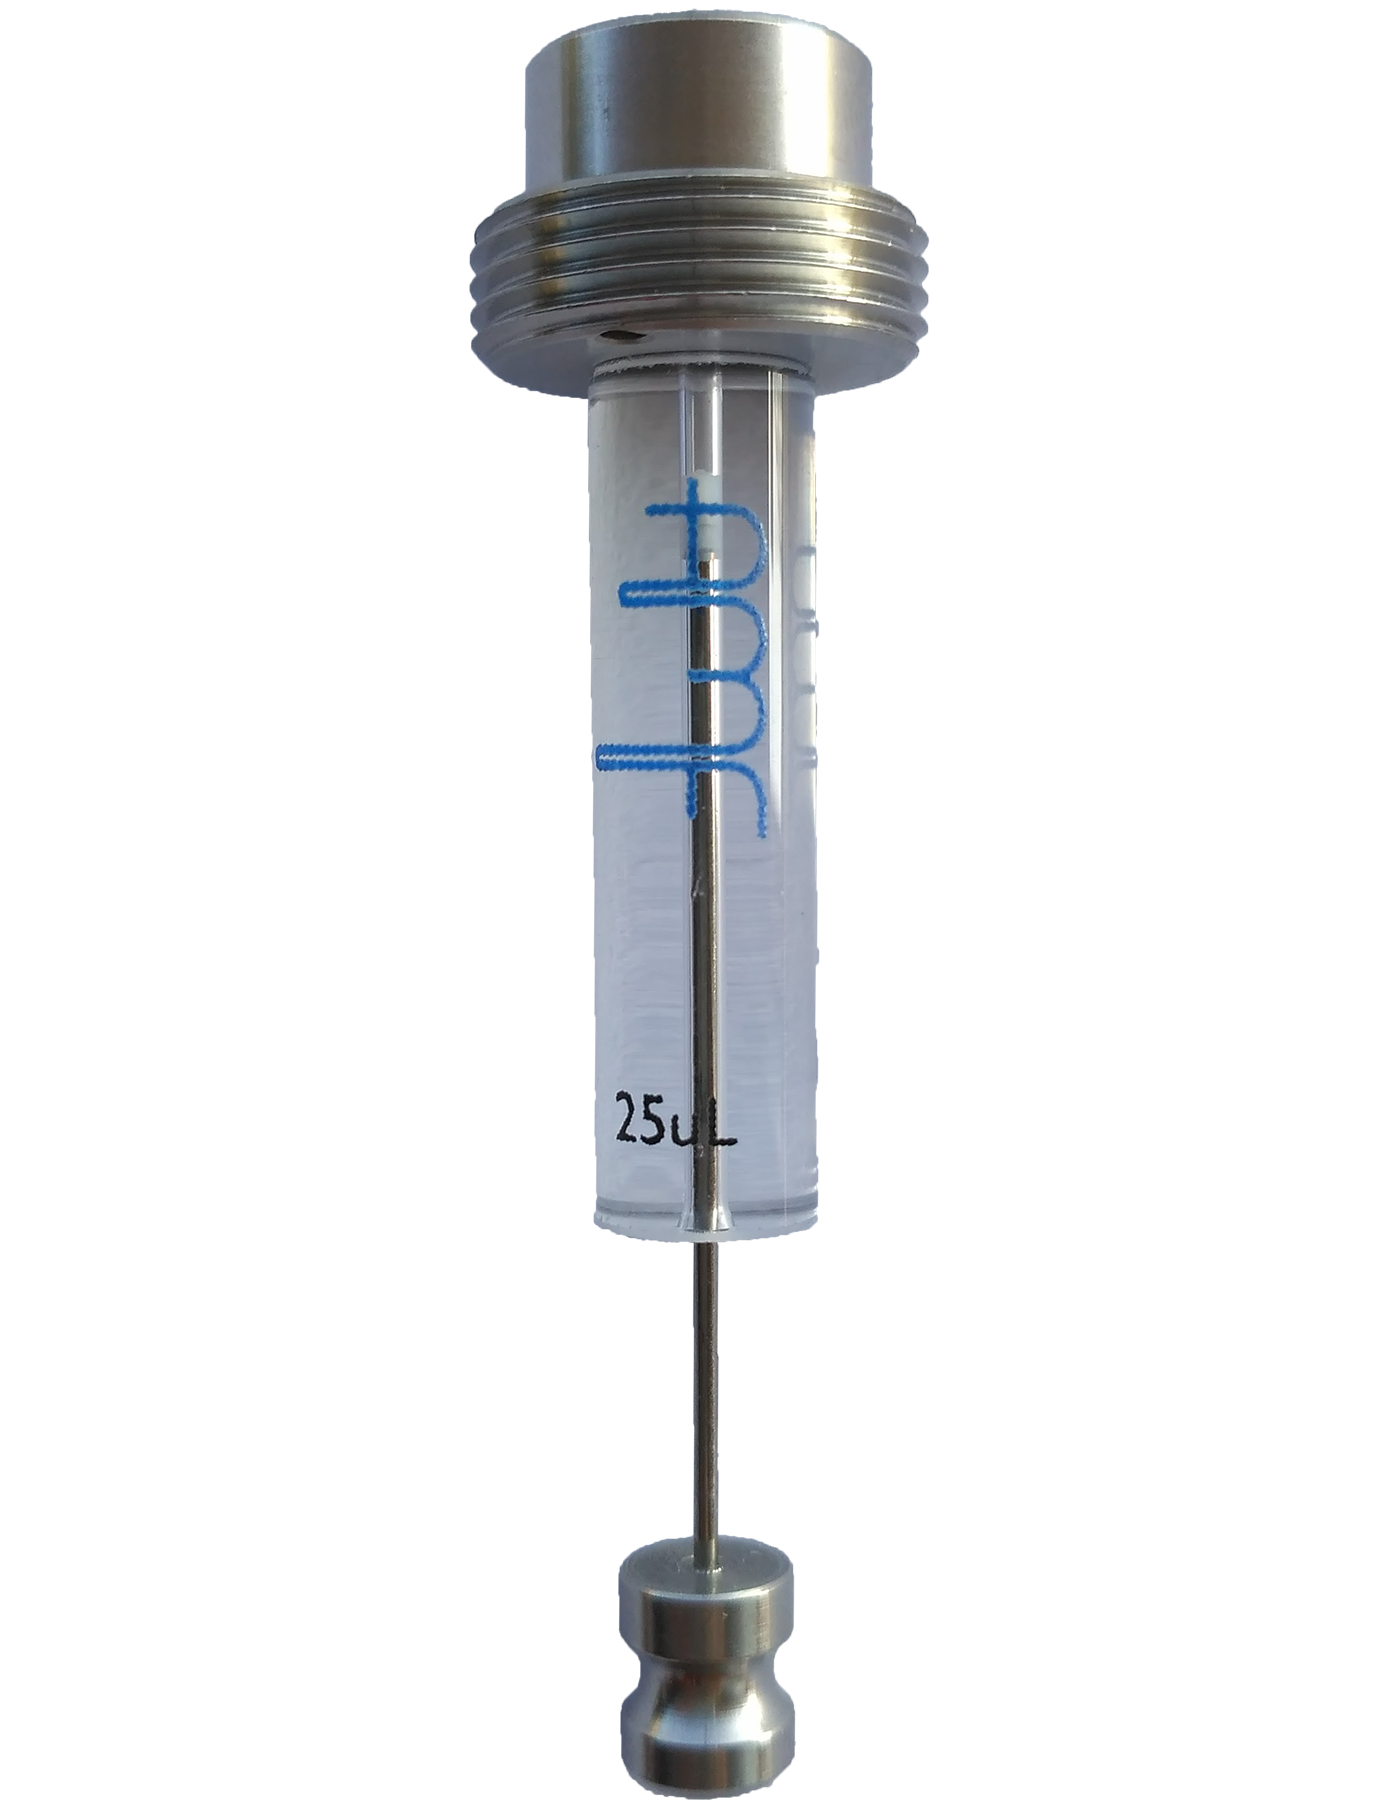 Syringe clipart syringe pump. Accessories advanced microfluidics syringes